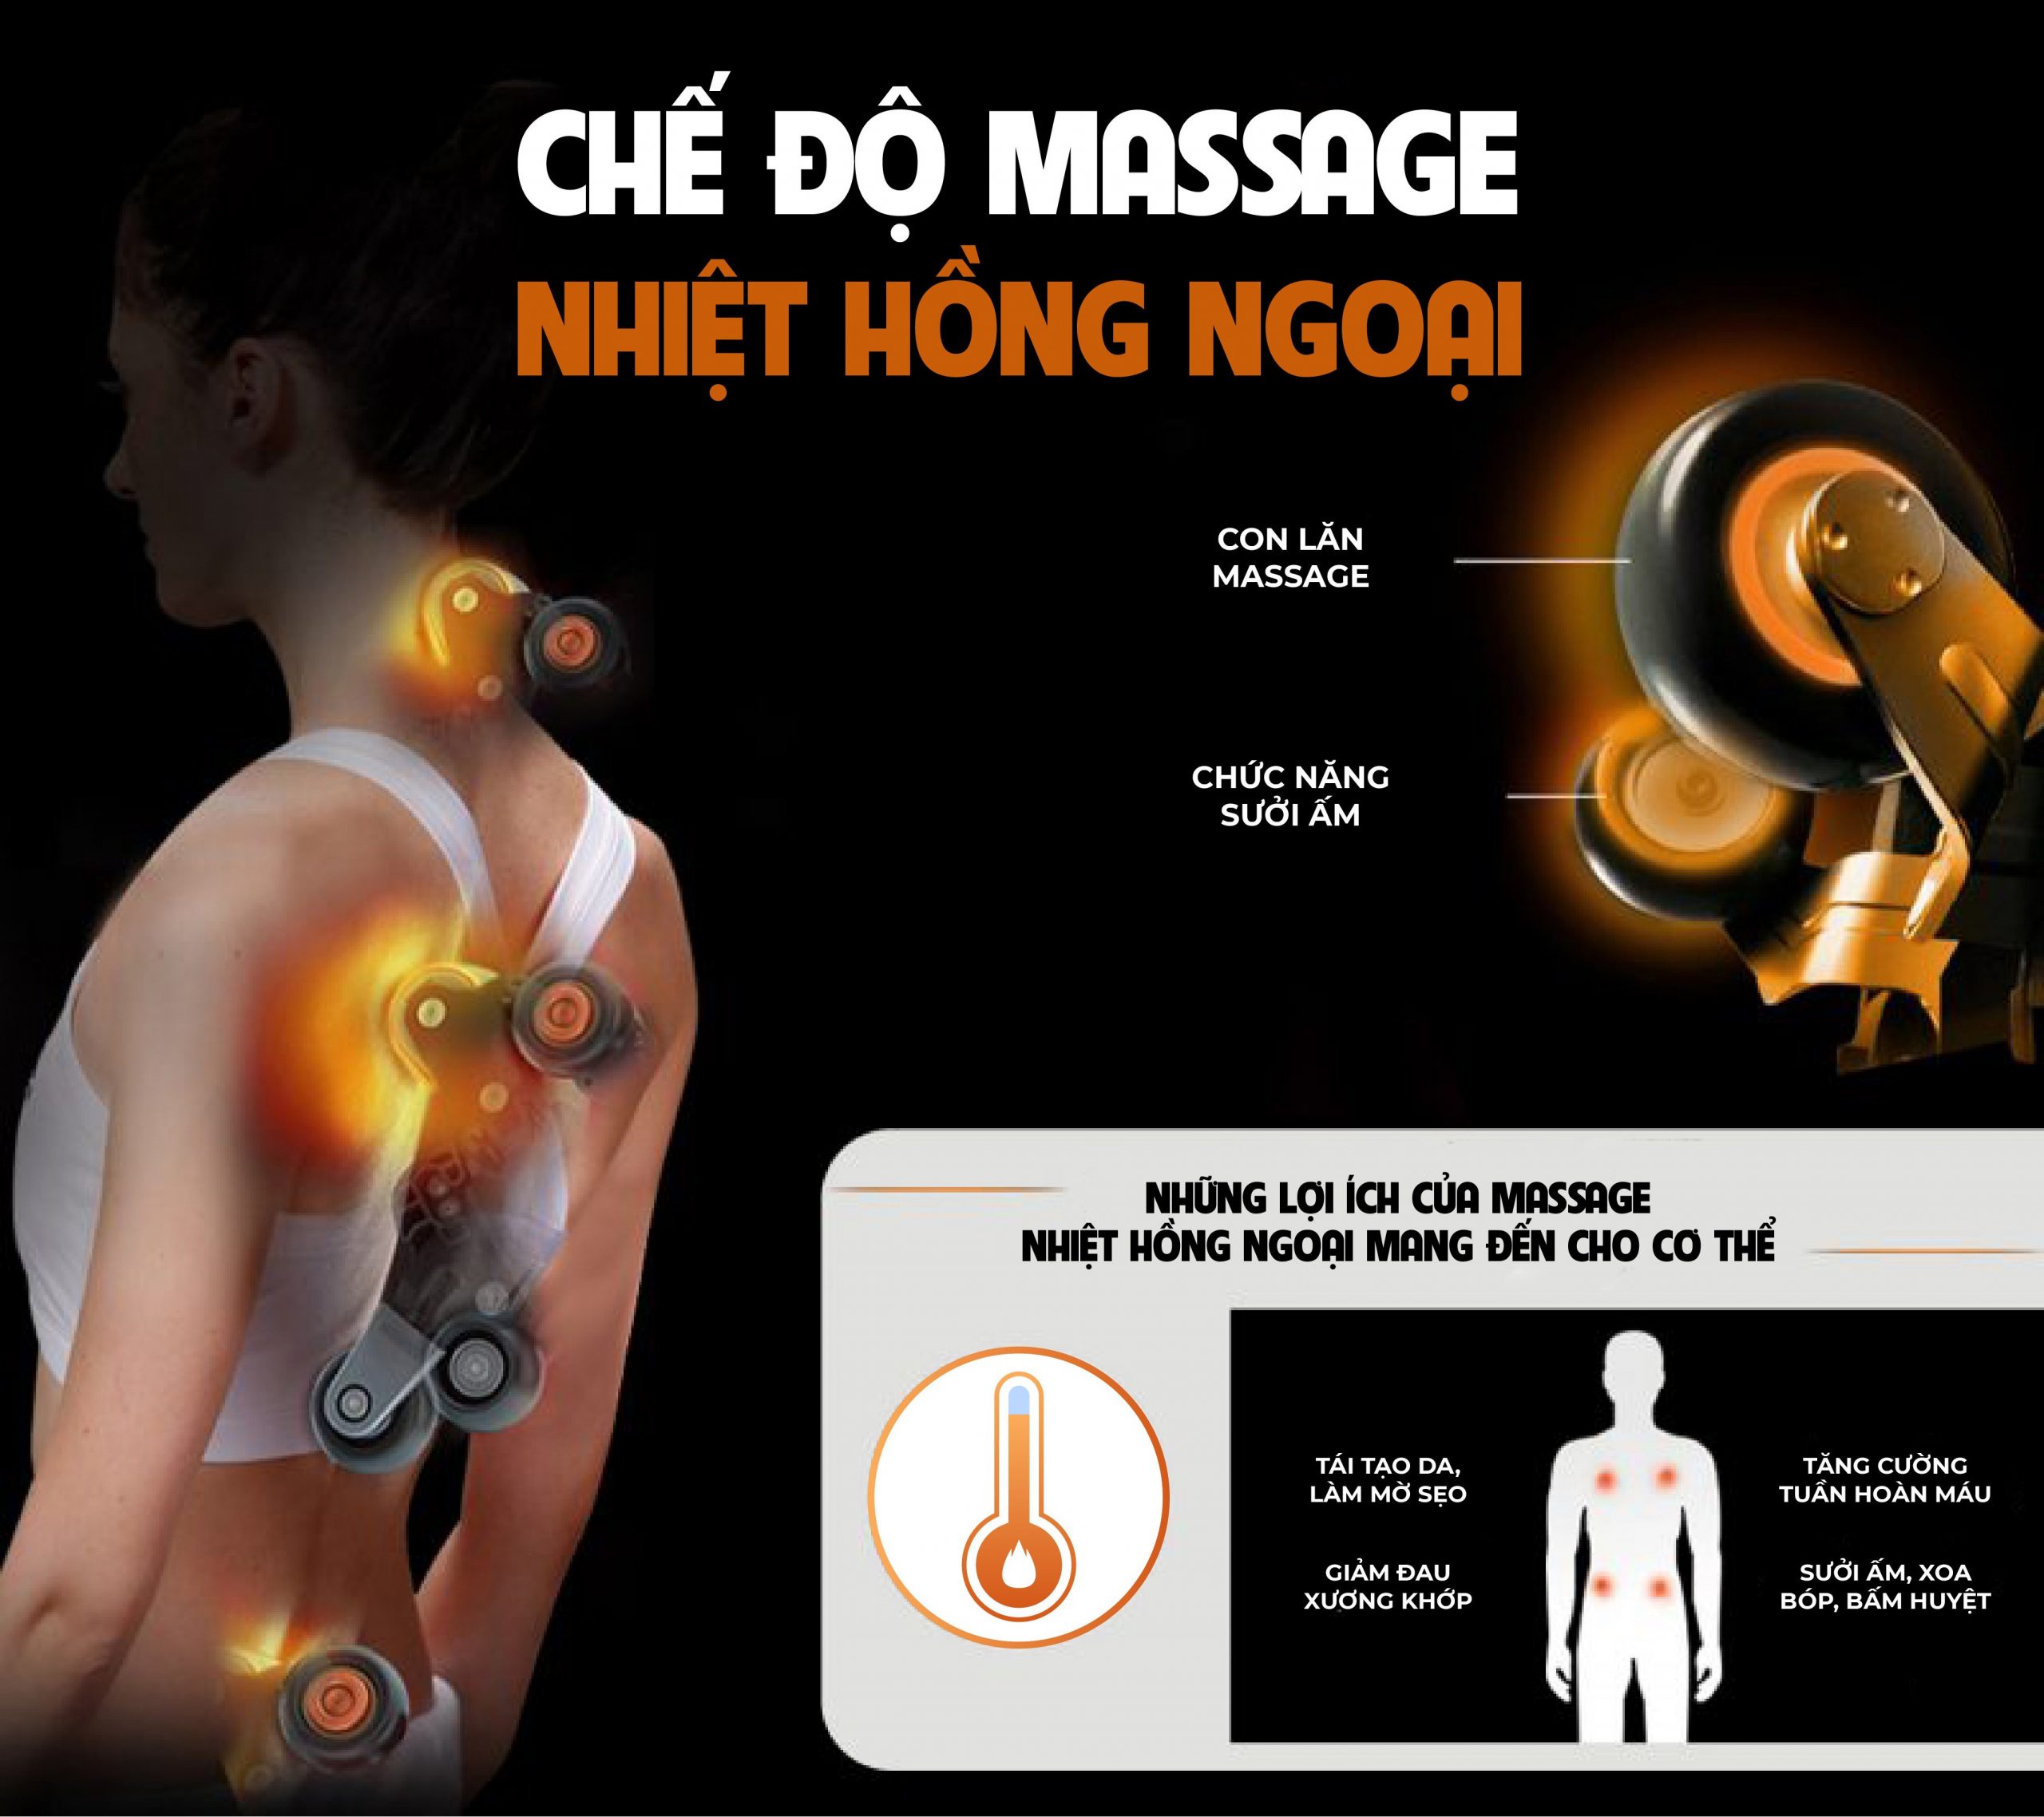 Chế độ massage nhiệt hồng ngoại thúc đẩy quá trình lưu thông mạch máu